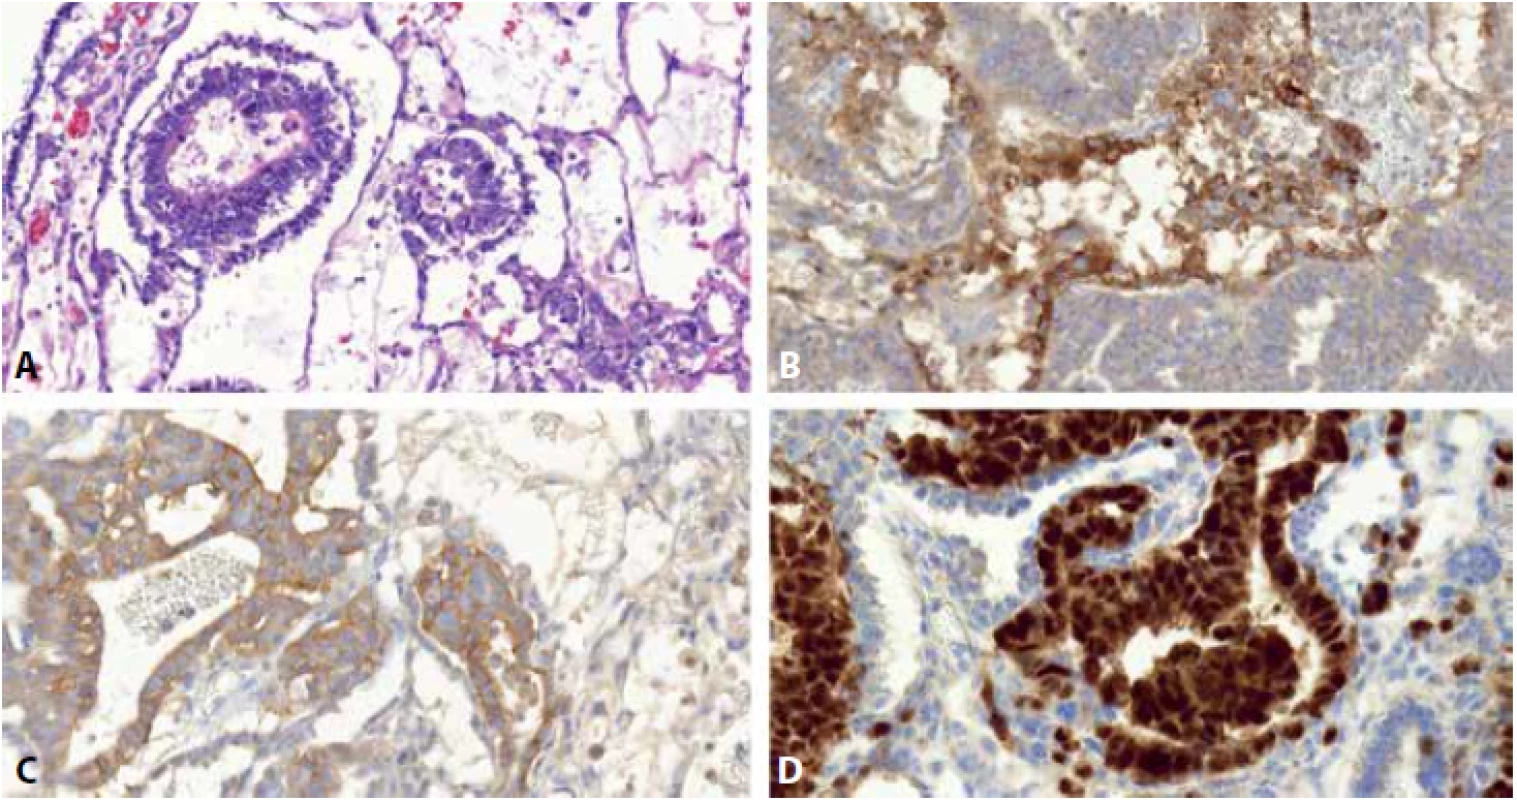 Smíšený germinální tumor sestávající z komponenty embryonálního karcinomu (EK) a yolk sac tumoru (YST). EK je složen ze solidně, pseudoglandulárně či alveolárně uspořádaných anaplastických epiteloidních buněk. YST je tvořen drobnějšími, zploštělými germinálními buňkami uspořádanými mikrocysticky a retikulárně (A). Protilátka glypican 3 barví membranozně a cytoplazmaticky buňky YST, struktury EK jsou negativní (B). CD30 je cytoplazmaticky a membranozně pozitivní v EK, negativní v YST (C). OCT3/4 je nukleárně pozitivní v EK, v YST negativní (D).